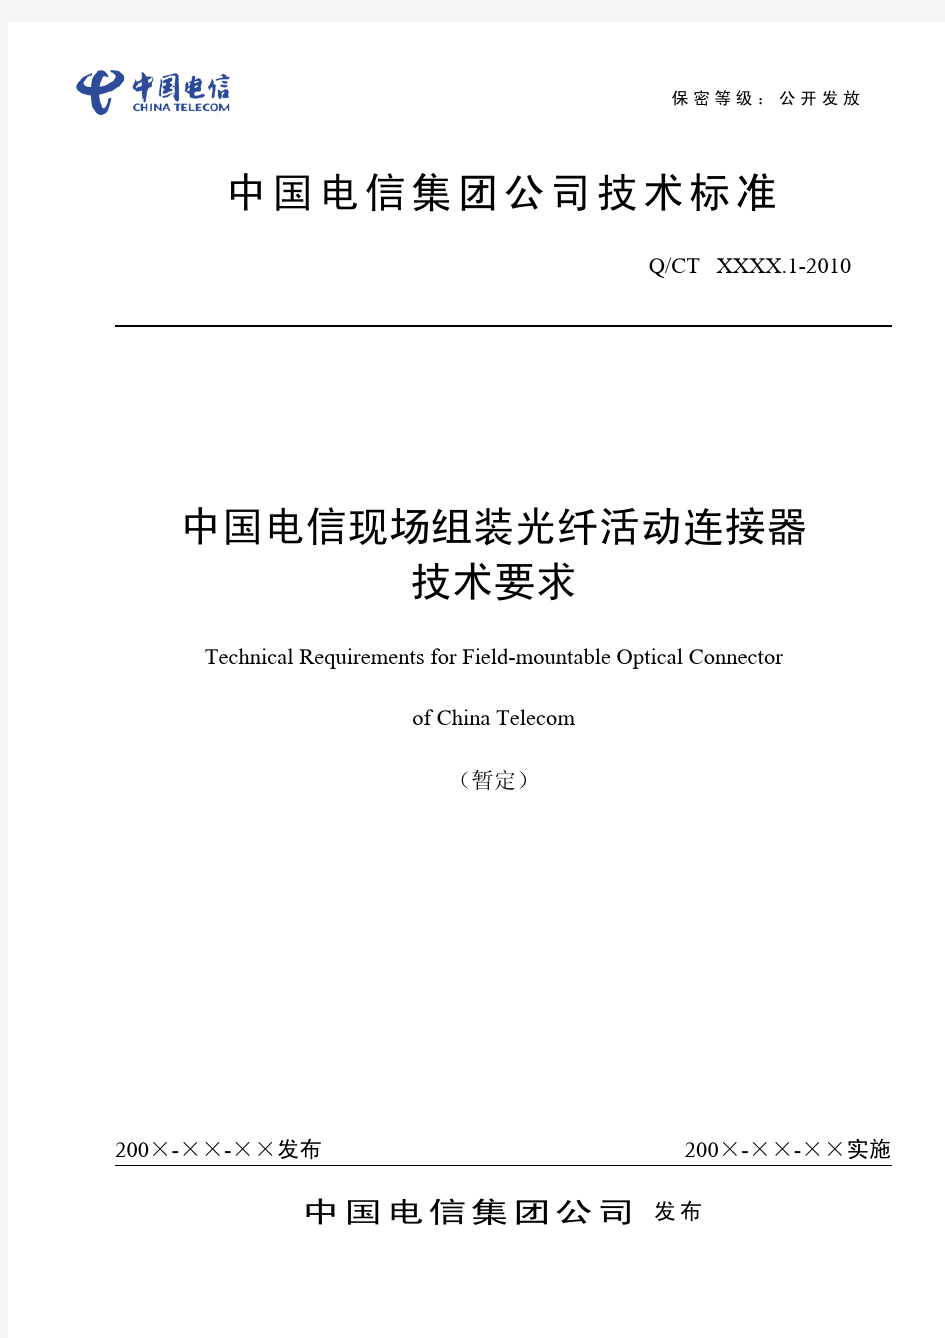 中国电信现场组装光纤活动连接器技术要求(报备稿)